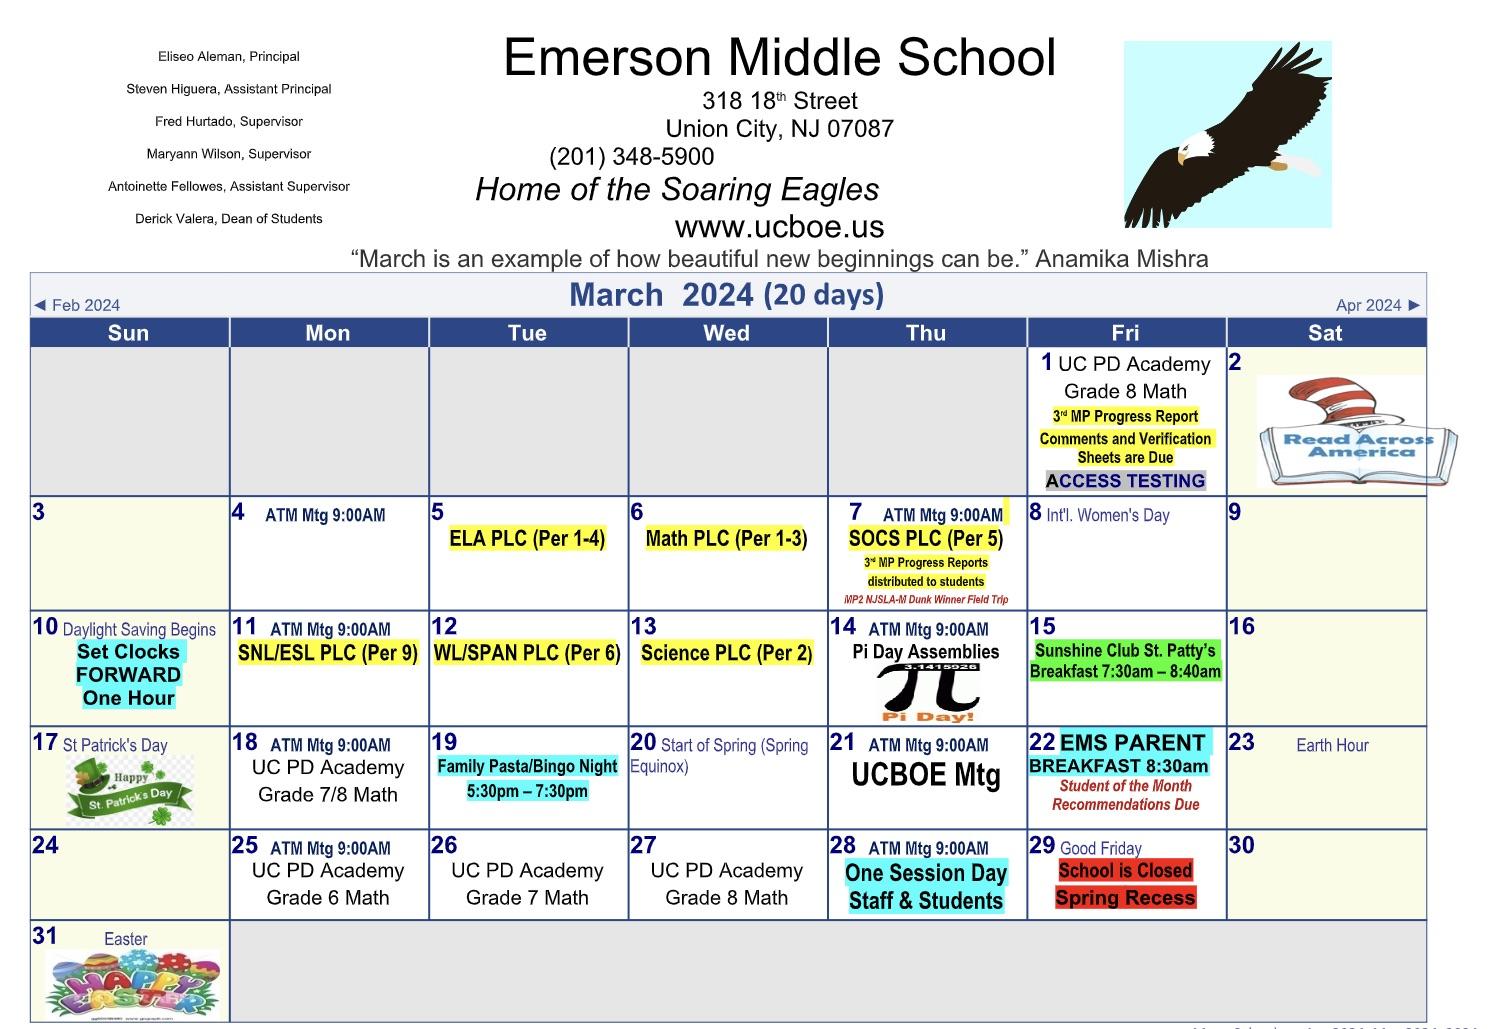 Emerson Middle School March 2024 Calendar